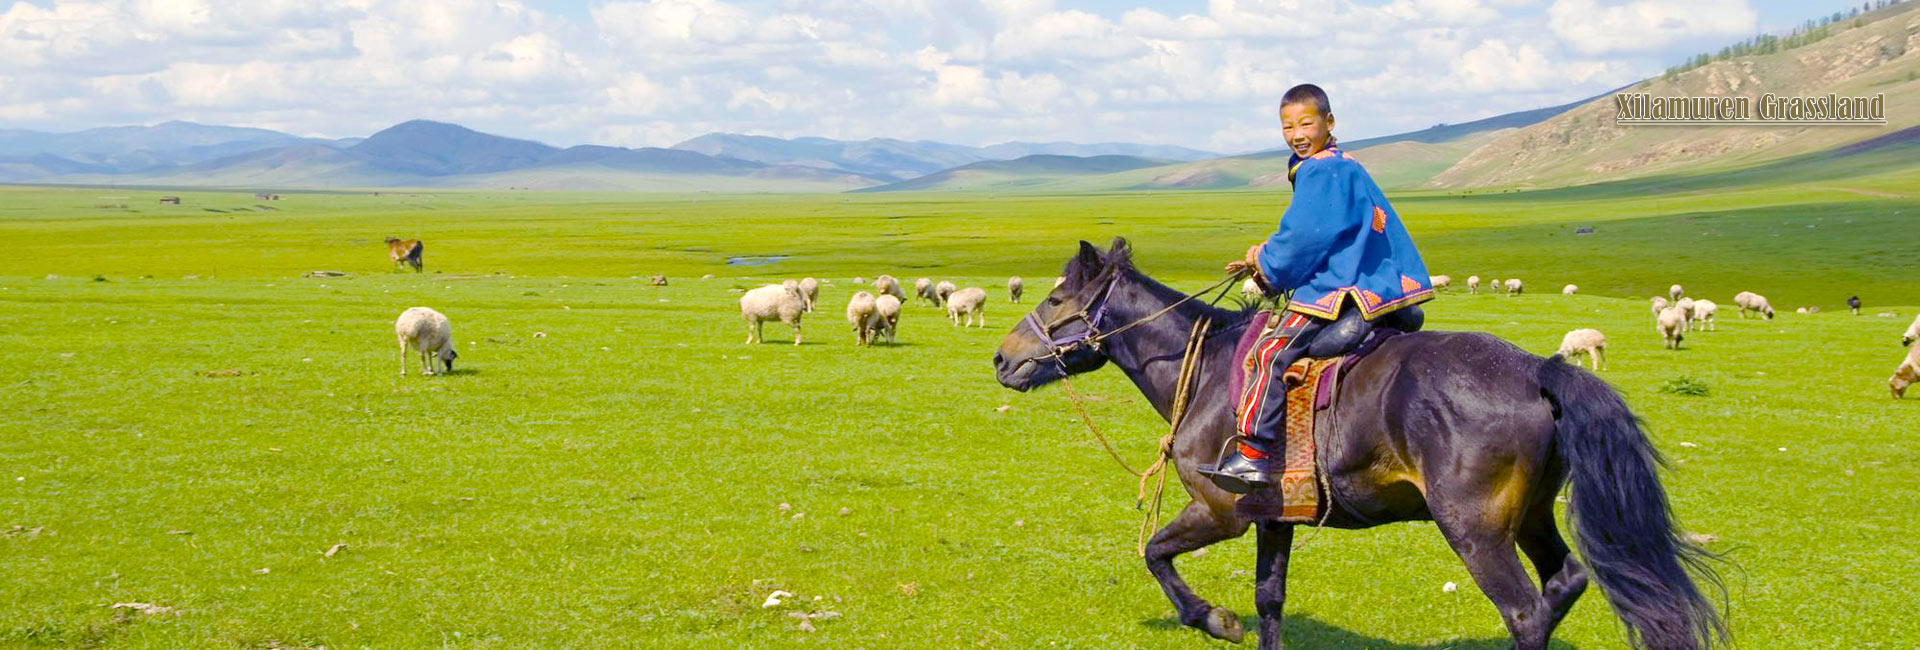 4 Days Hohhot Grassland Tour